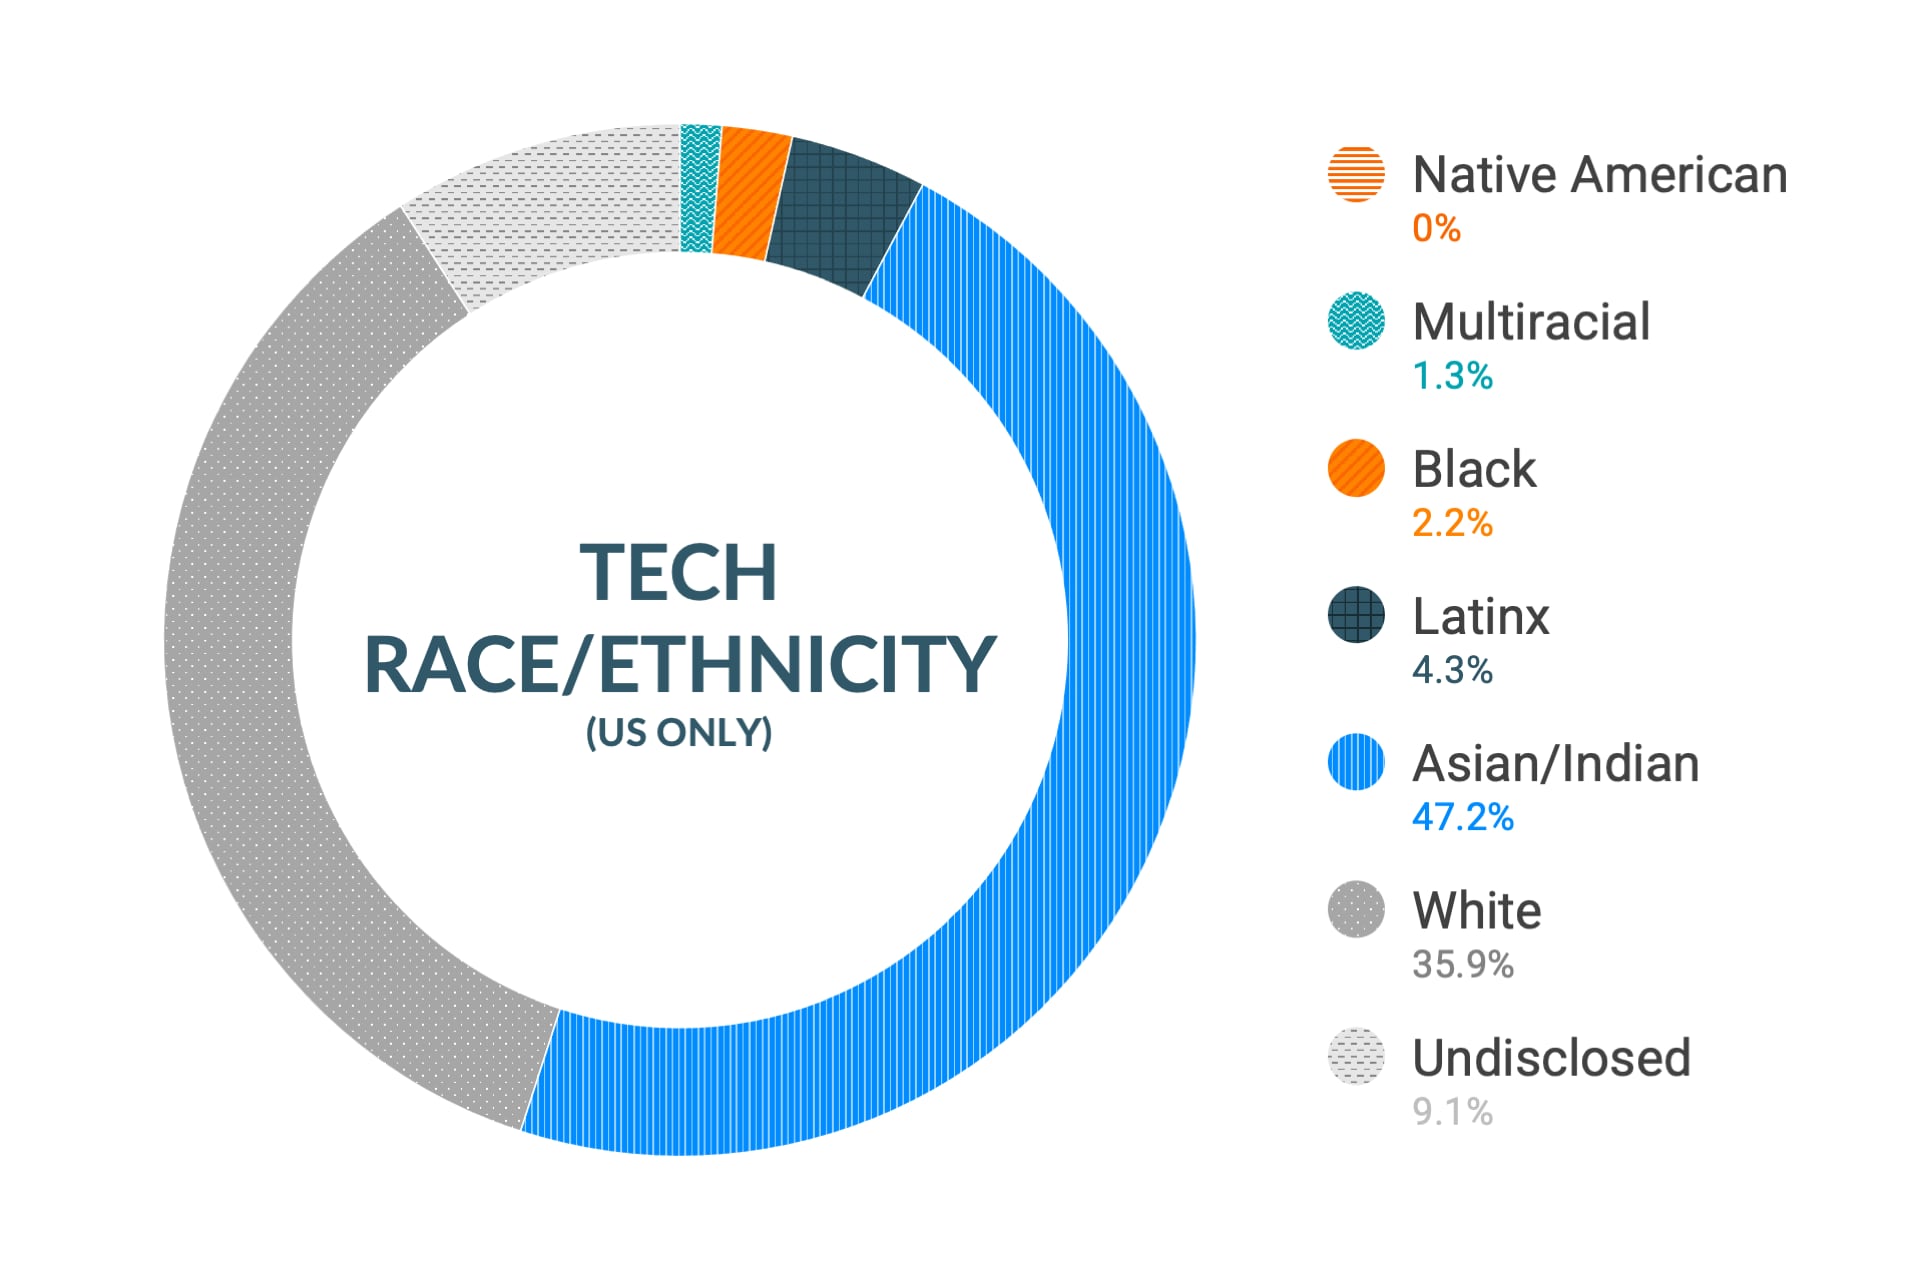 미국 지역 기술 및 엔지니어링 역할 내 인종 및 민족에 대한 Cloudera의 다양성 및 포용력 데이터: 아메리카 원주민 0%, 다인종 1.6%, 흑인 2.3%, 라틴계 2.9%, 아시아인 및 인도인 46.7%, 백인 37.6%, 비공개 8.9%